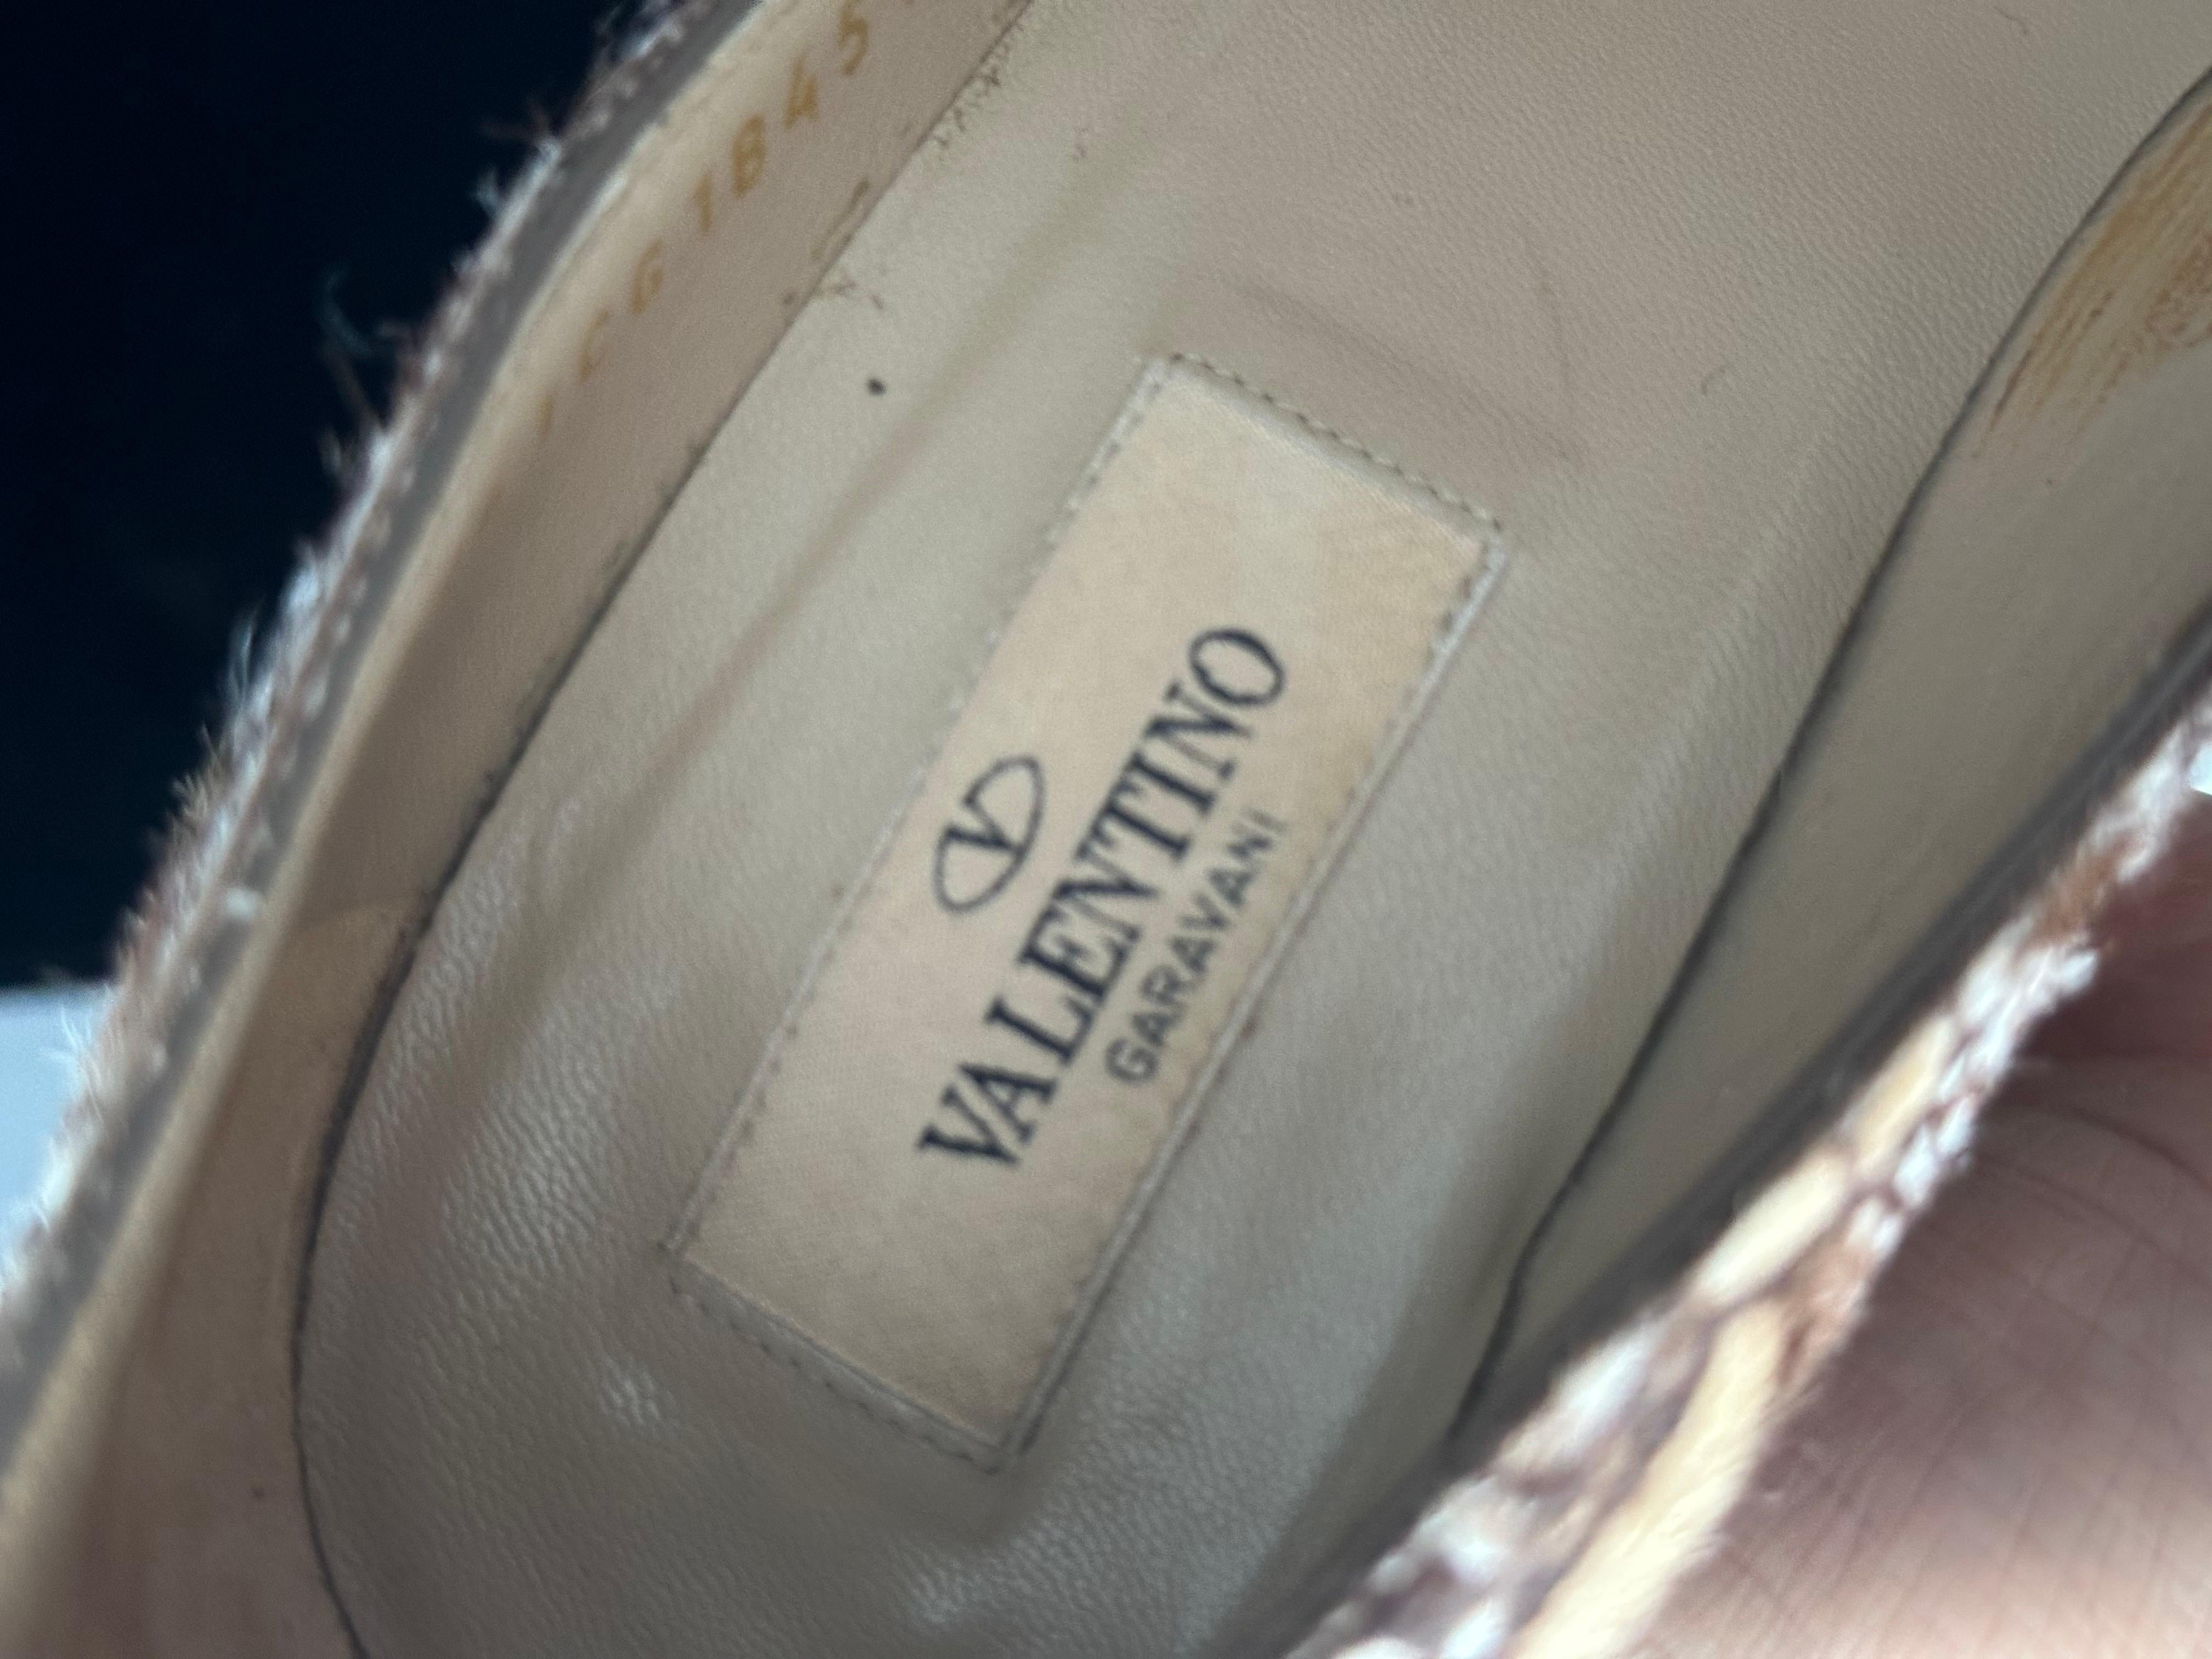 Scarpe Valentino Garavani in cavallino In Excellent Condition For Sale In Basaluzzo, IT